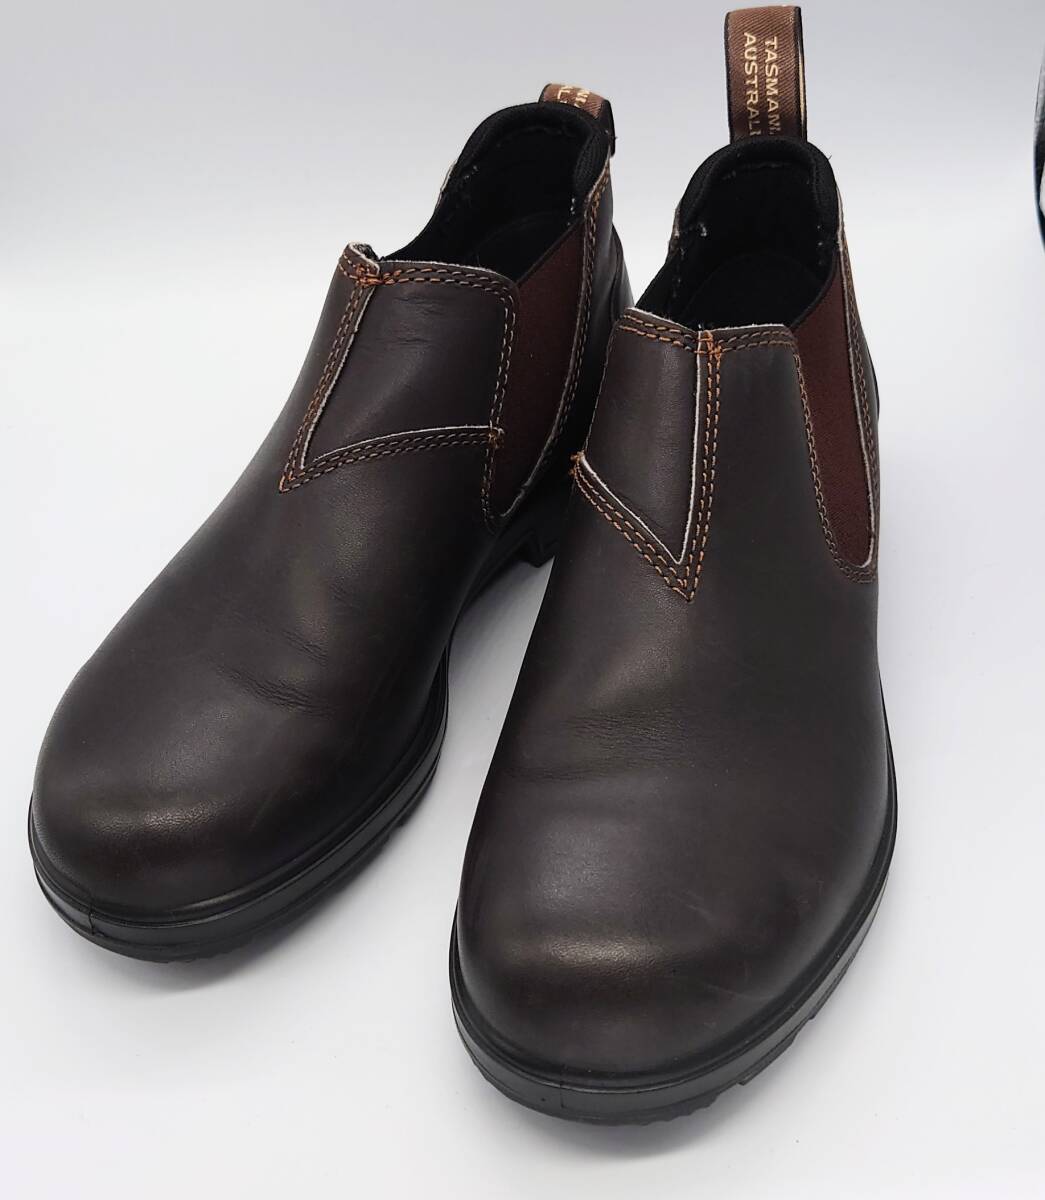 ユナイテッドアローズ取扱 Blundstone ブランドストーン ORIGINALS LOW CUT ローカット ブーツ 短靴 5 24.5cmレディース 防水レインブーツ_画像1